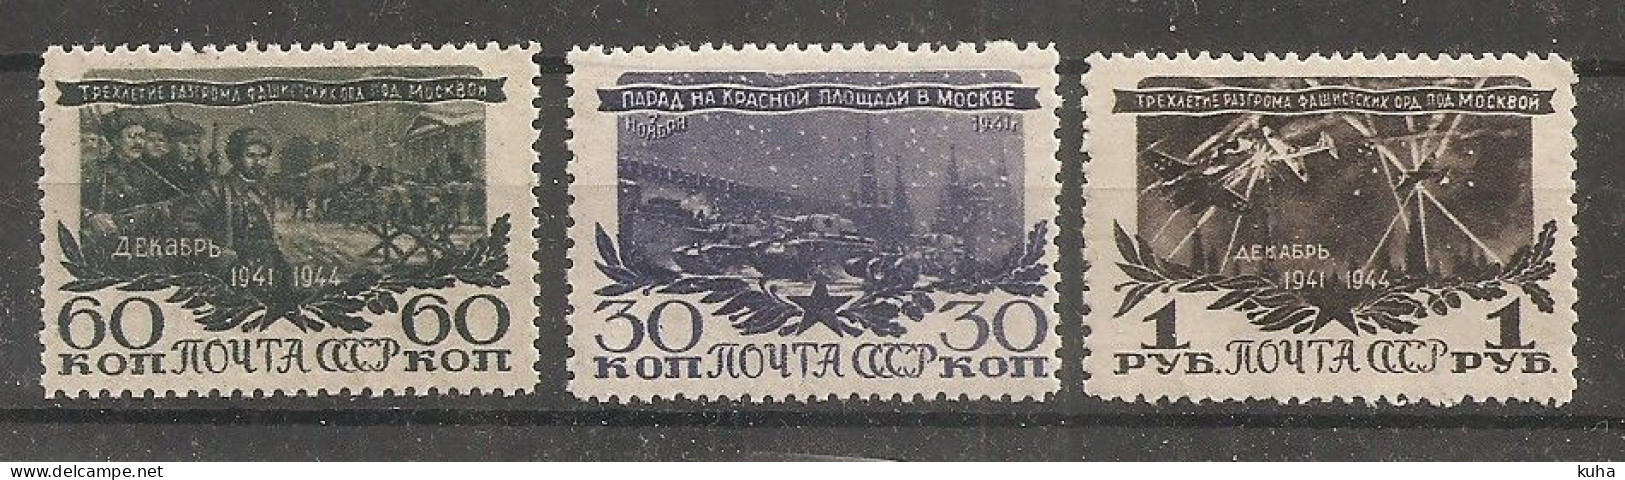 Russia Russie USSR Soviet Union 1945 WWII   MNH - Ungebraucht